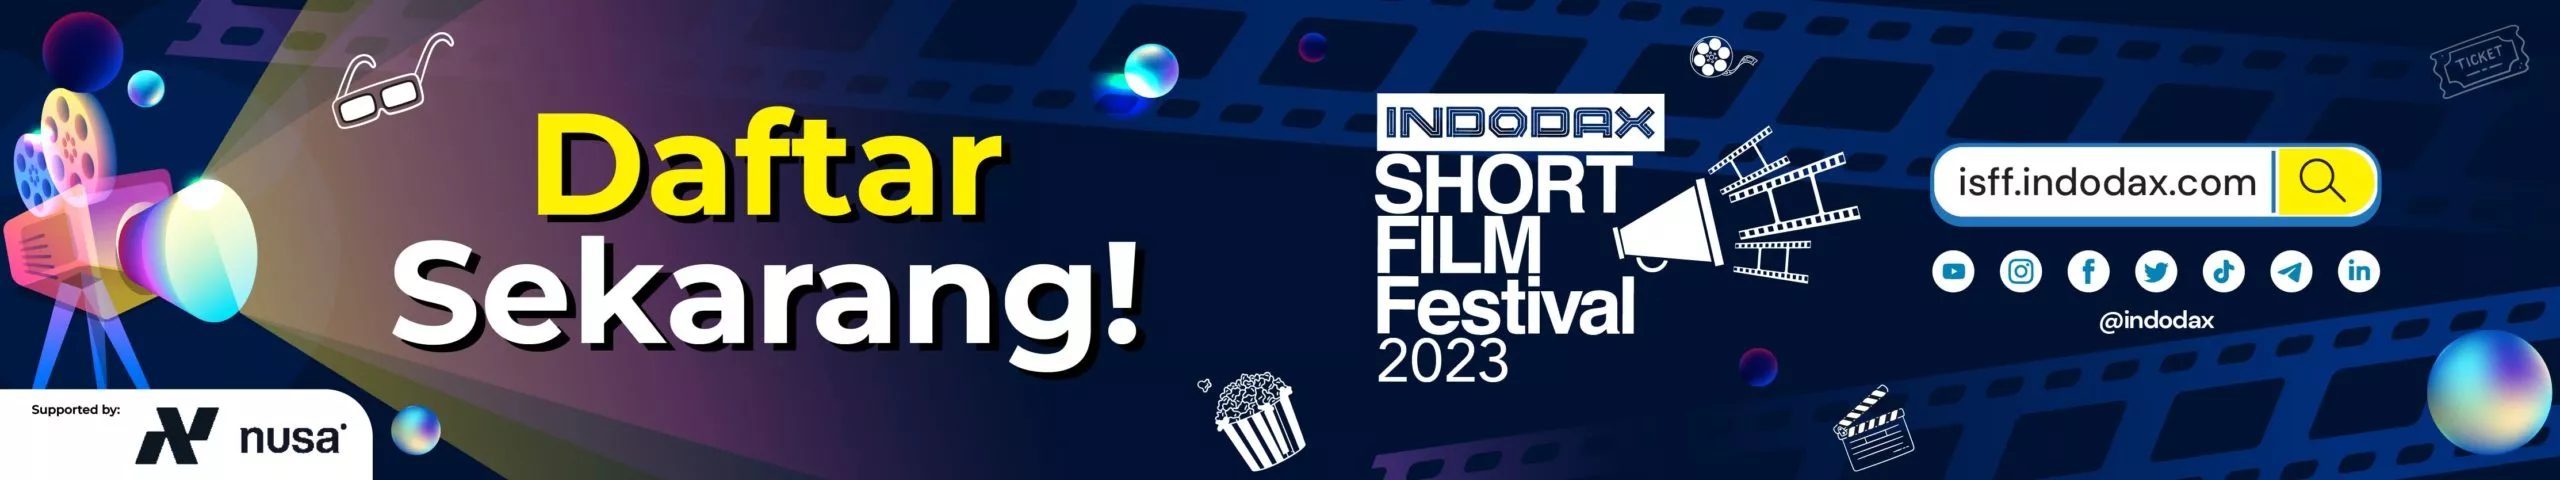 Indodax Short Film Festival 2023